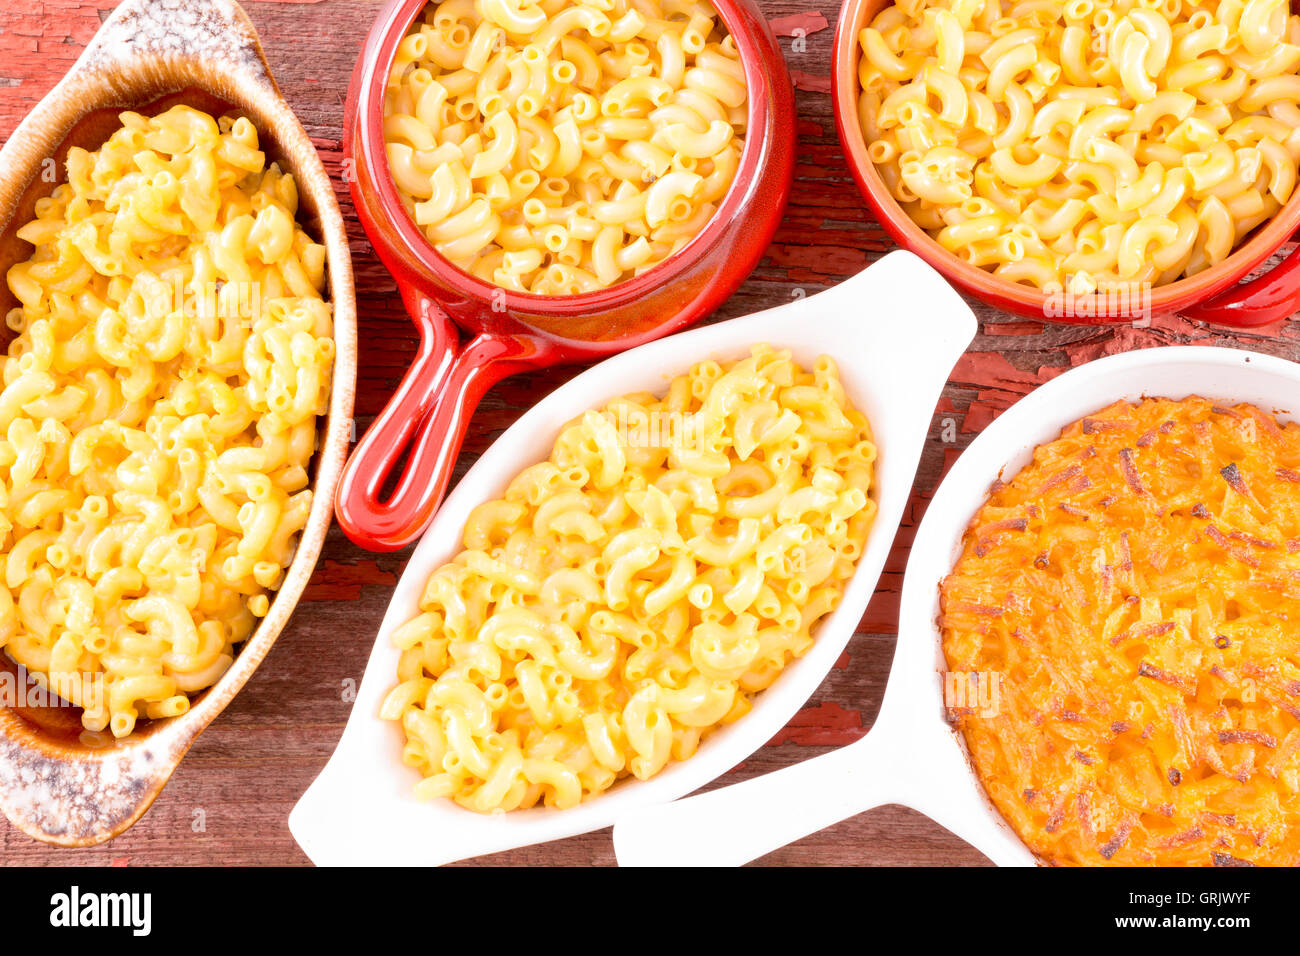 Au-dessus de la vue conceptuelle fermer macaroni au fromage servi dans cinq tasses diffrent sur nappe marron Banque D'Images